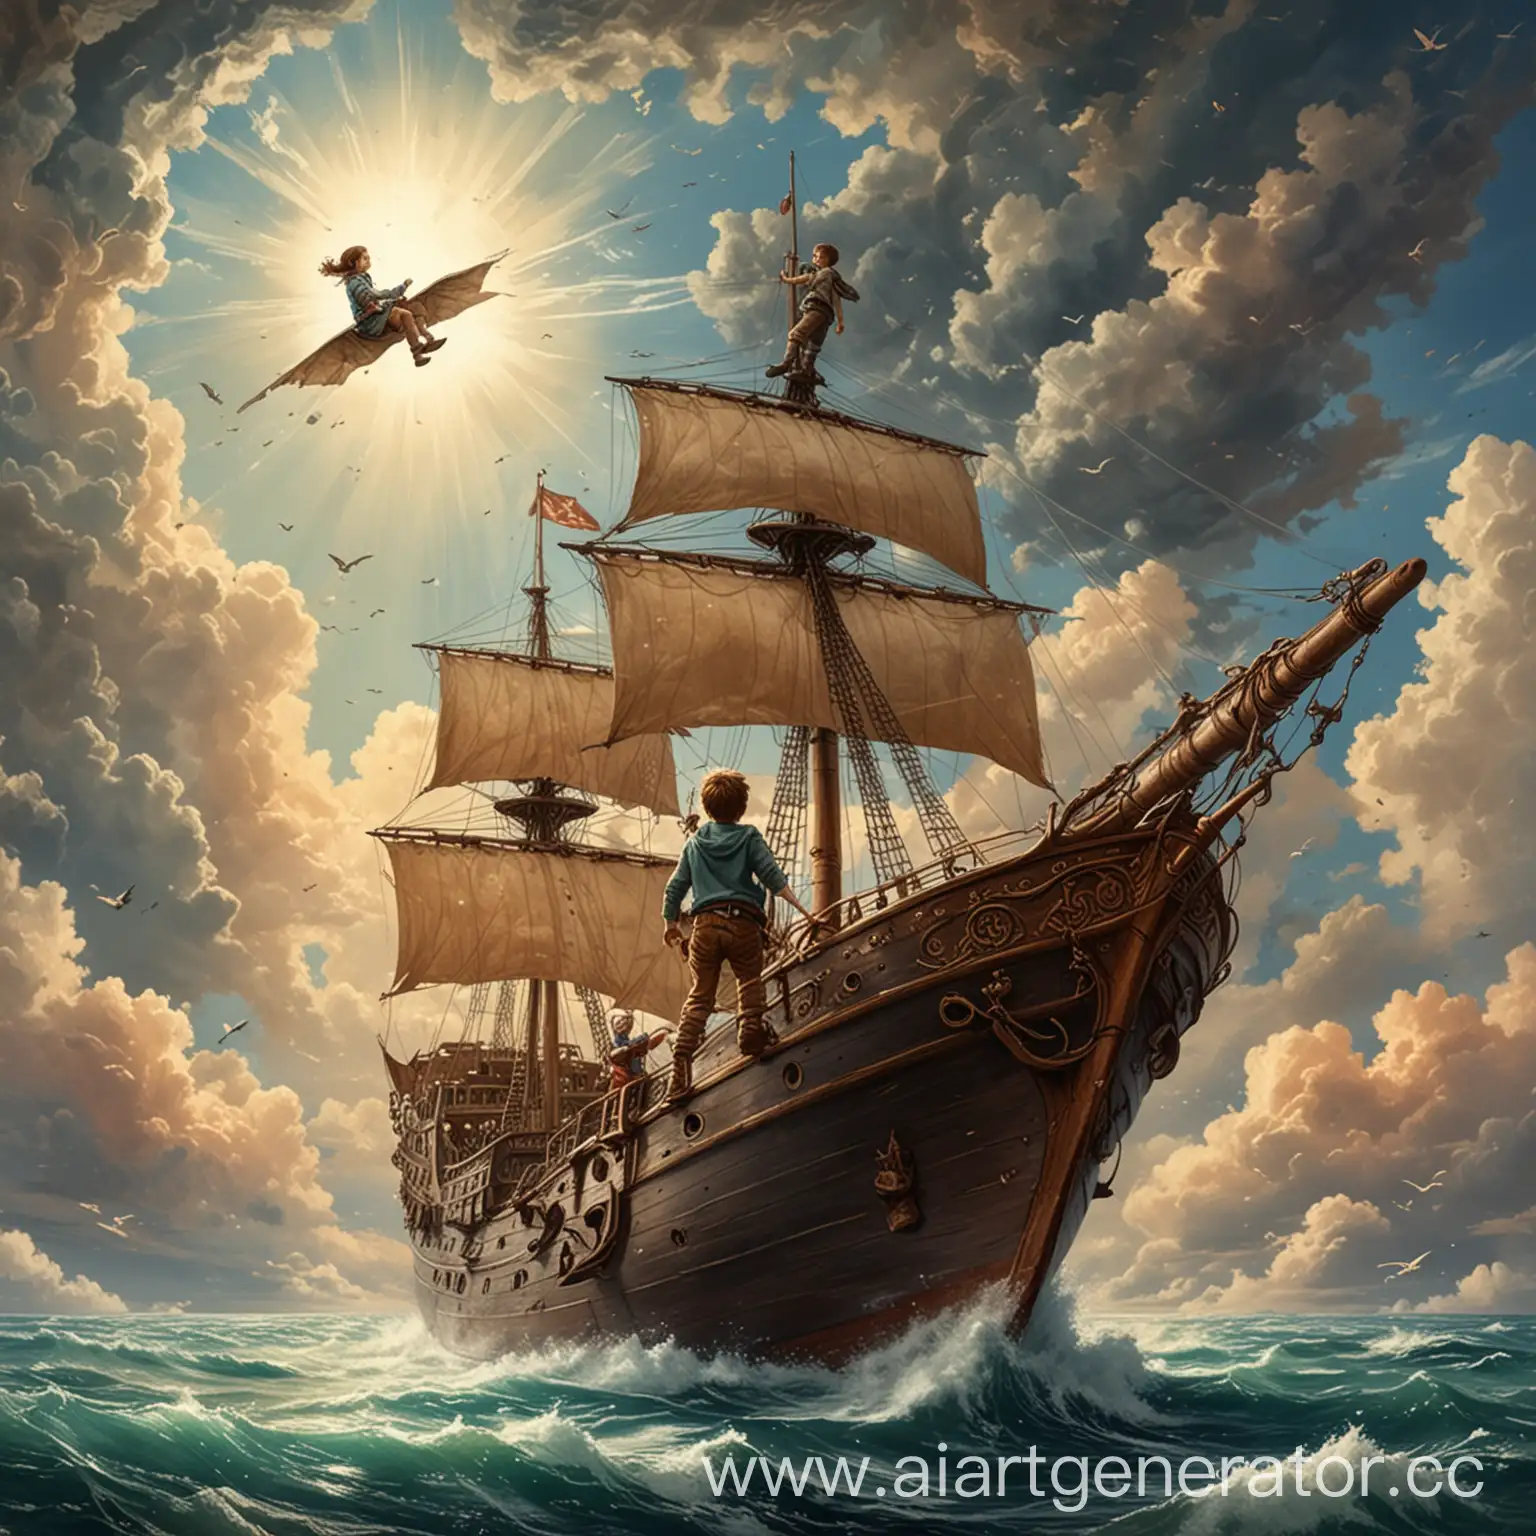 парень на корабле, летит к девушке на небо, рисунок художника